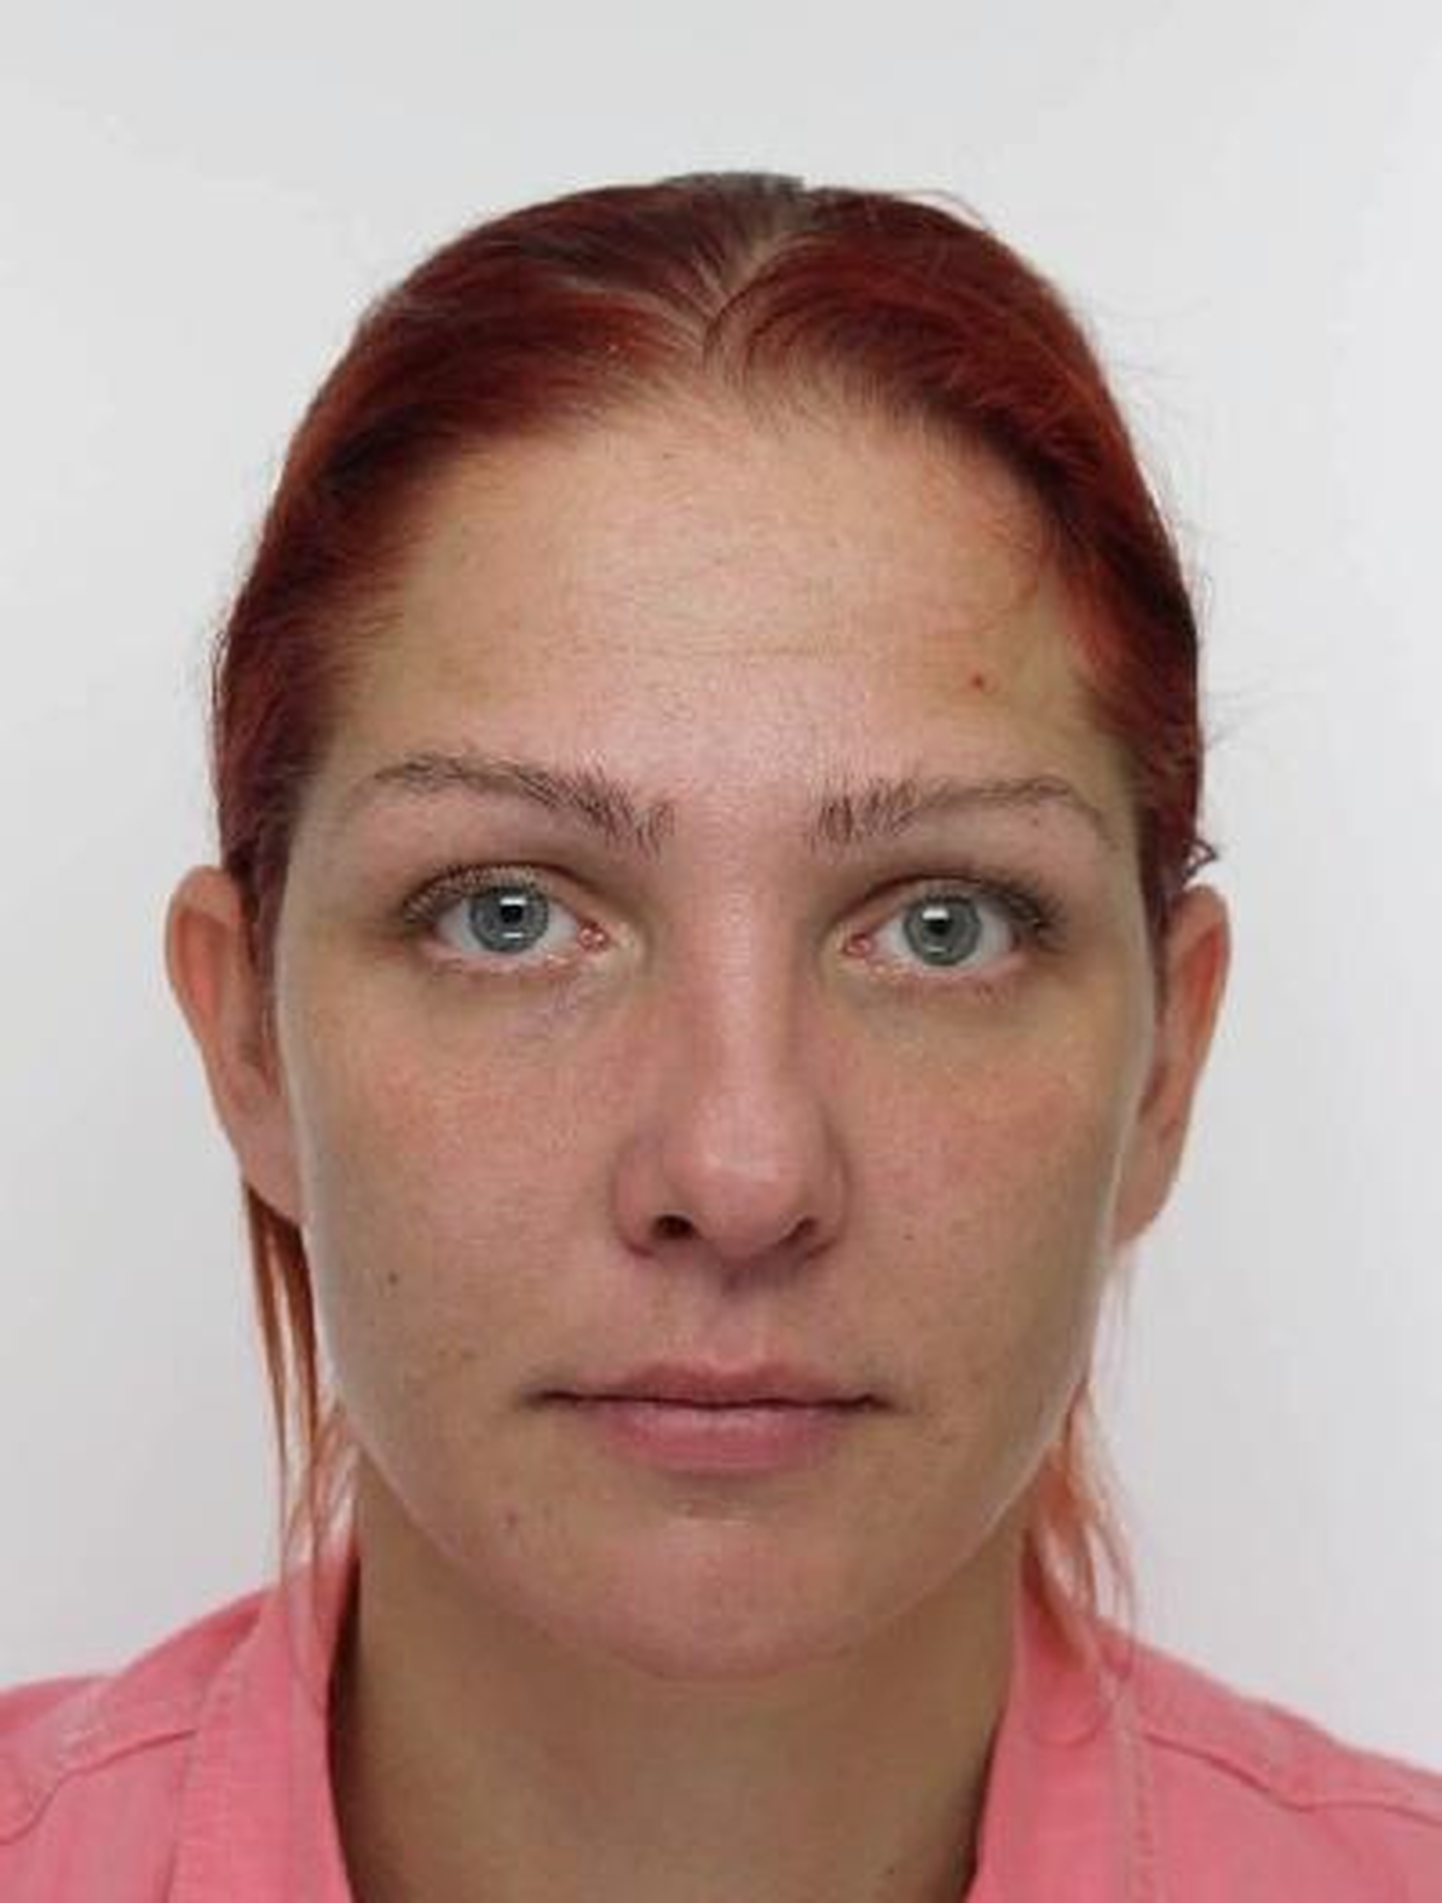 37aastane Merit on olnud kadunud alates eelmisest reedest, 9. novembrist. POLITSEI